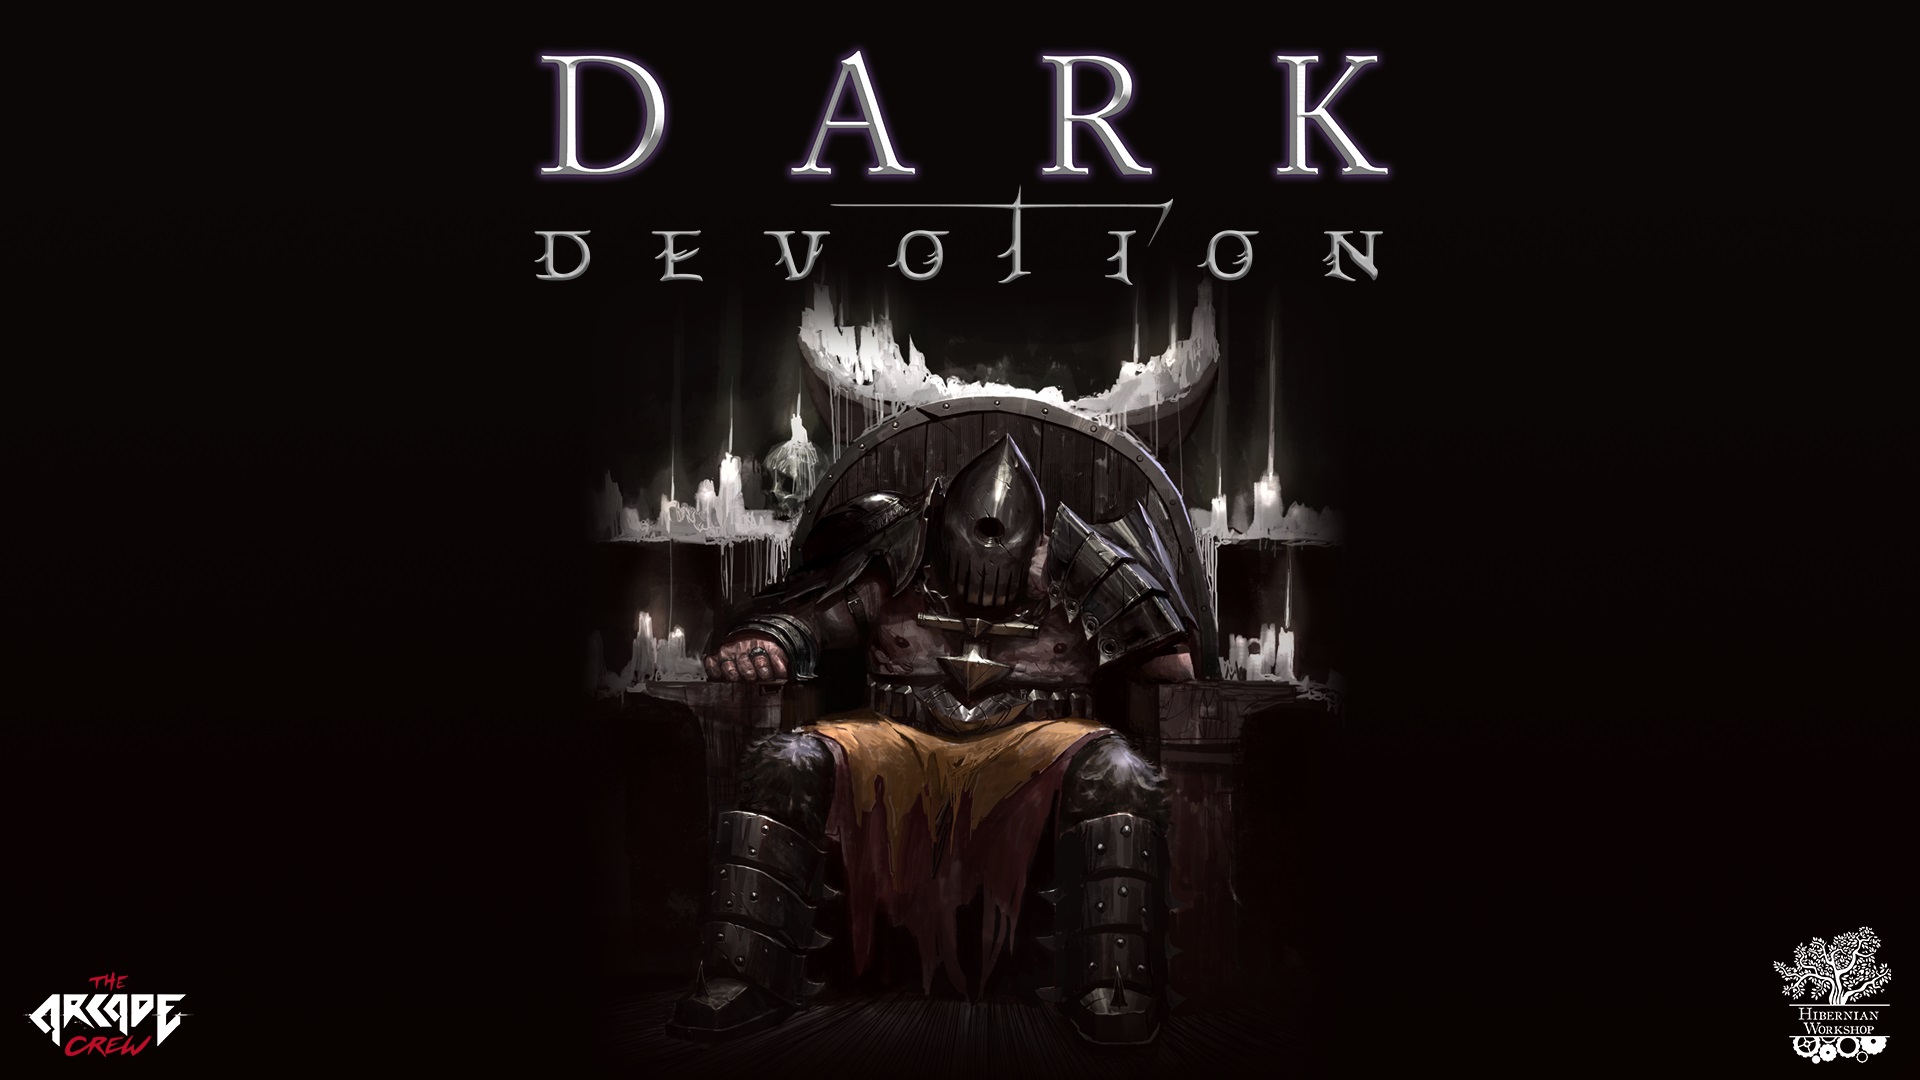 Dark Devotion confirma su lanzamiento en PS4 y Switch para el 24 de octubre | Nuevo tráiler